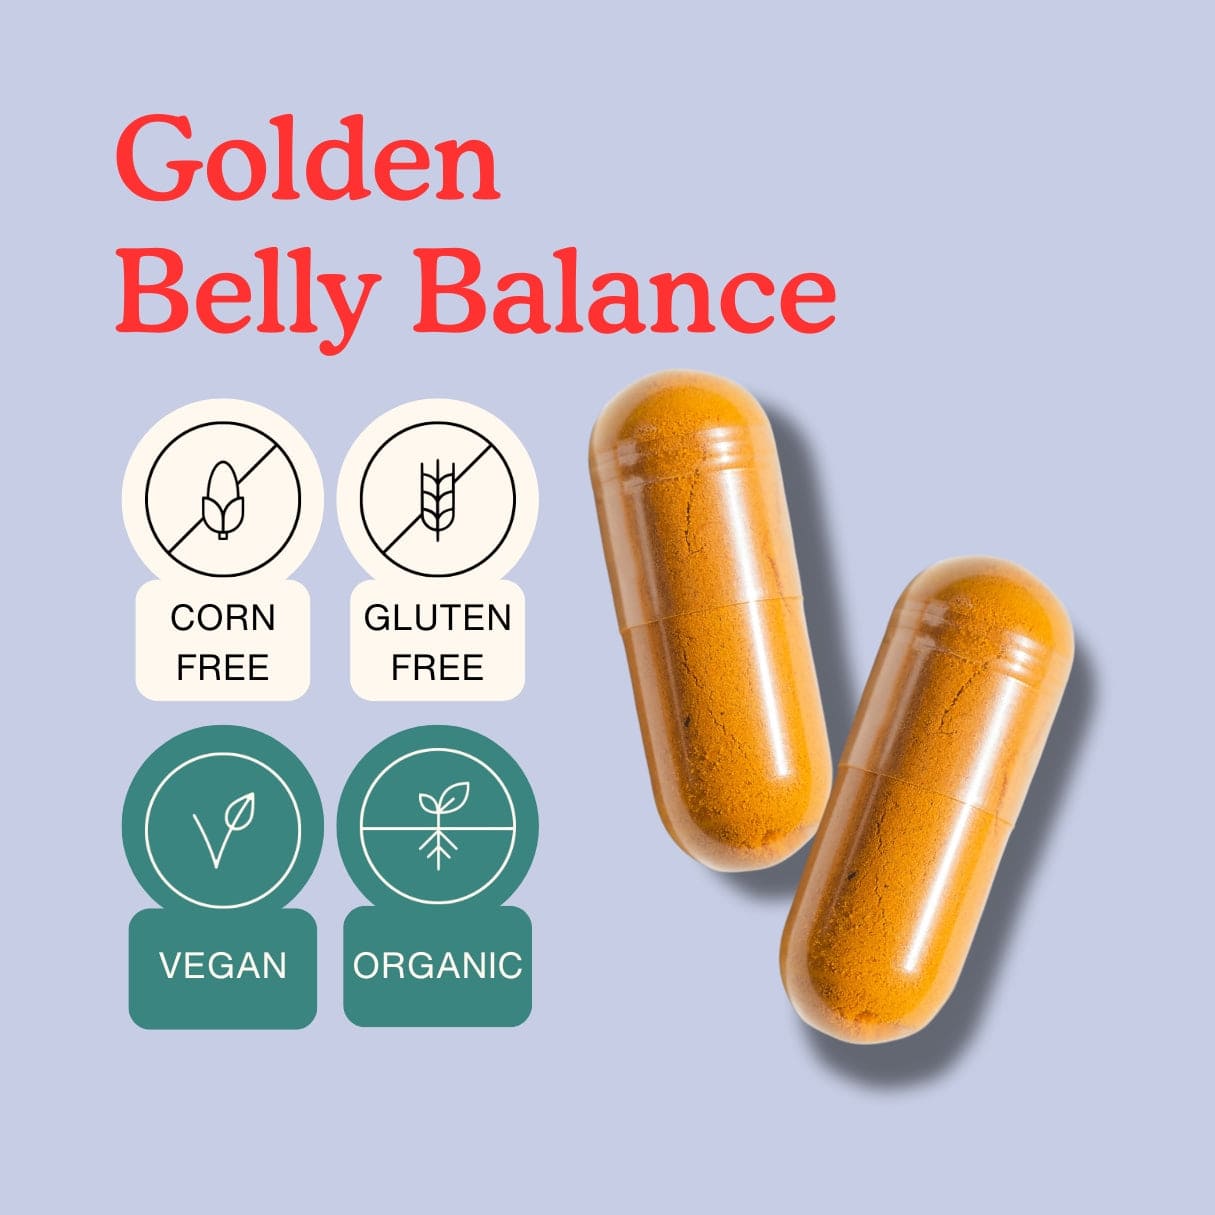 Golden Belly Balance